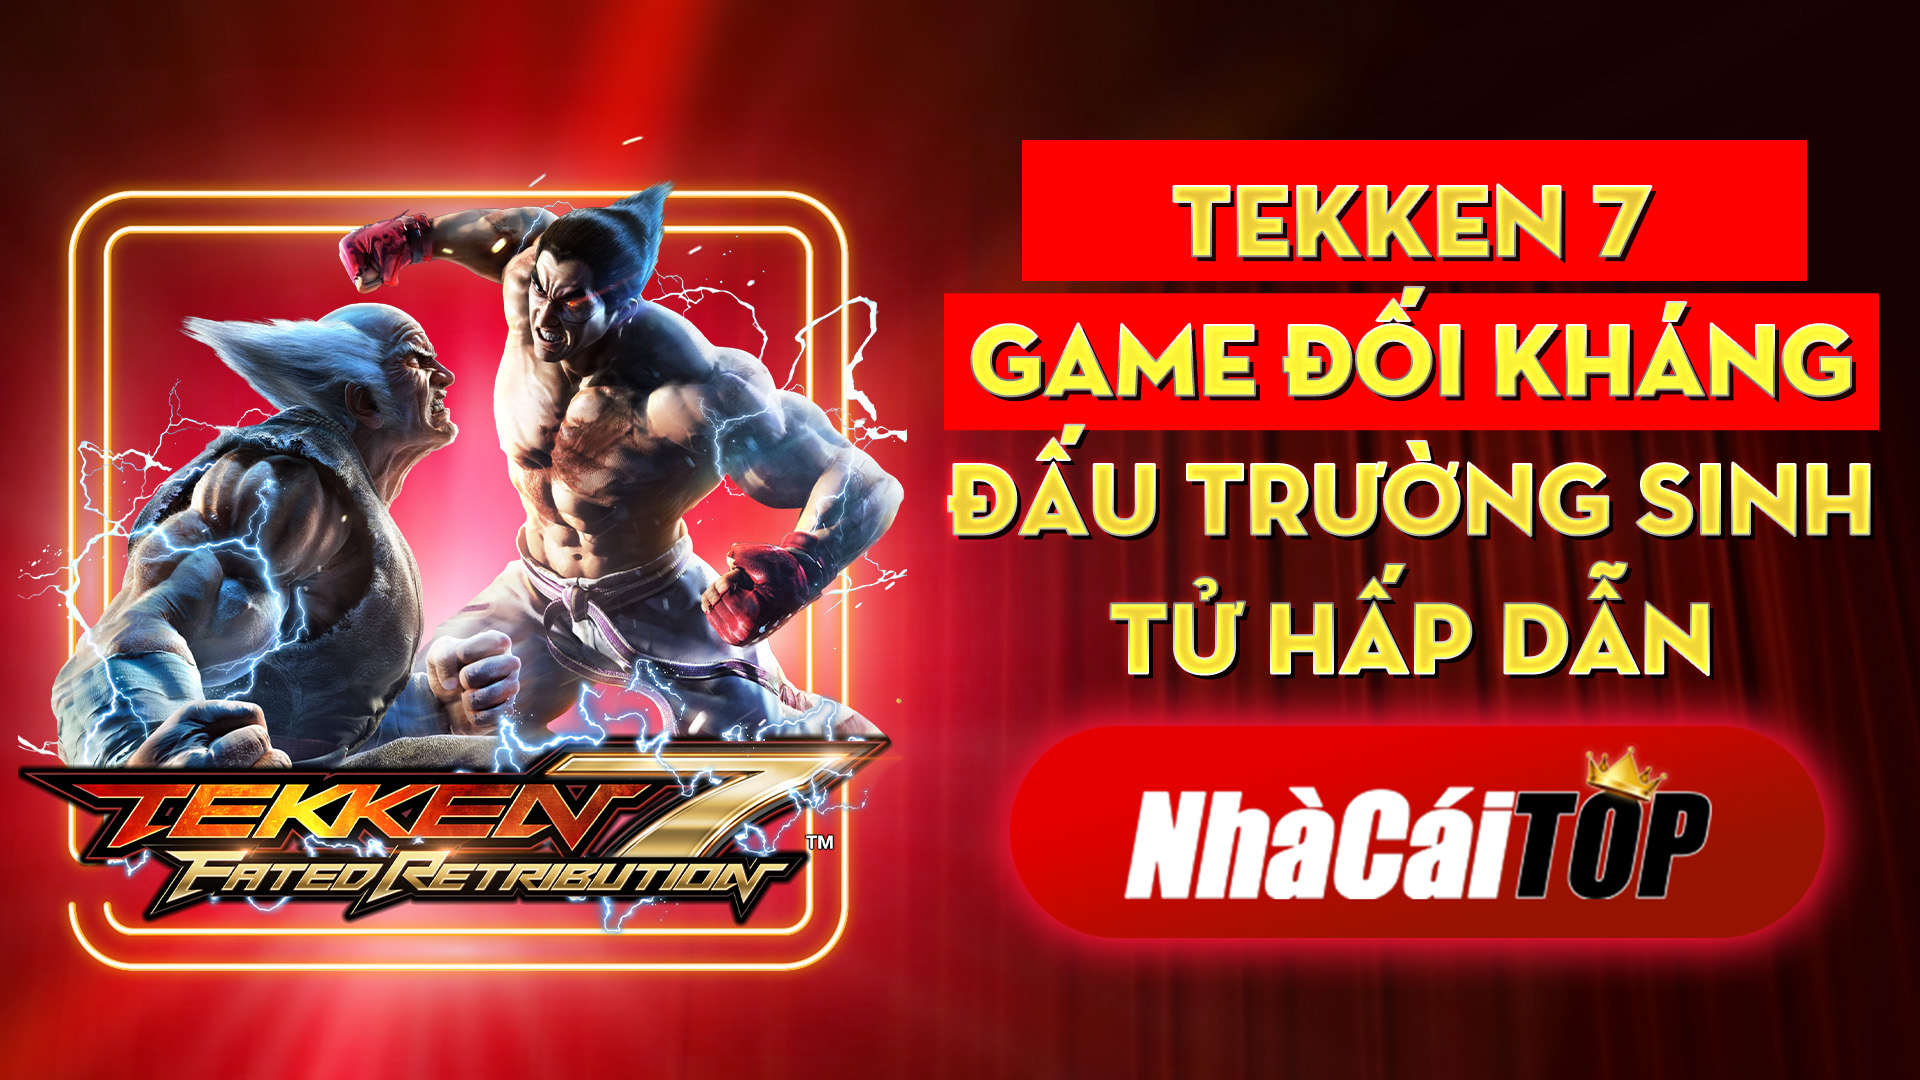 350 Tekken 7 – Game Djoi Khang Djau Truong Sinh Tu Hap Dan